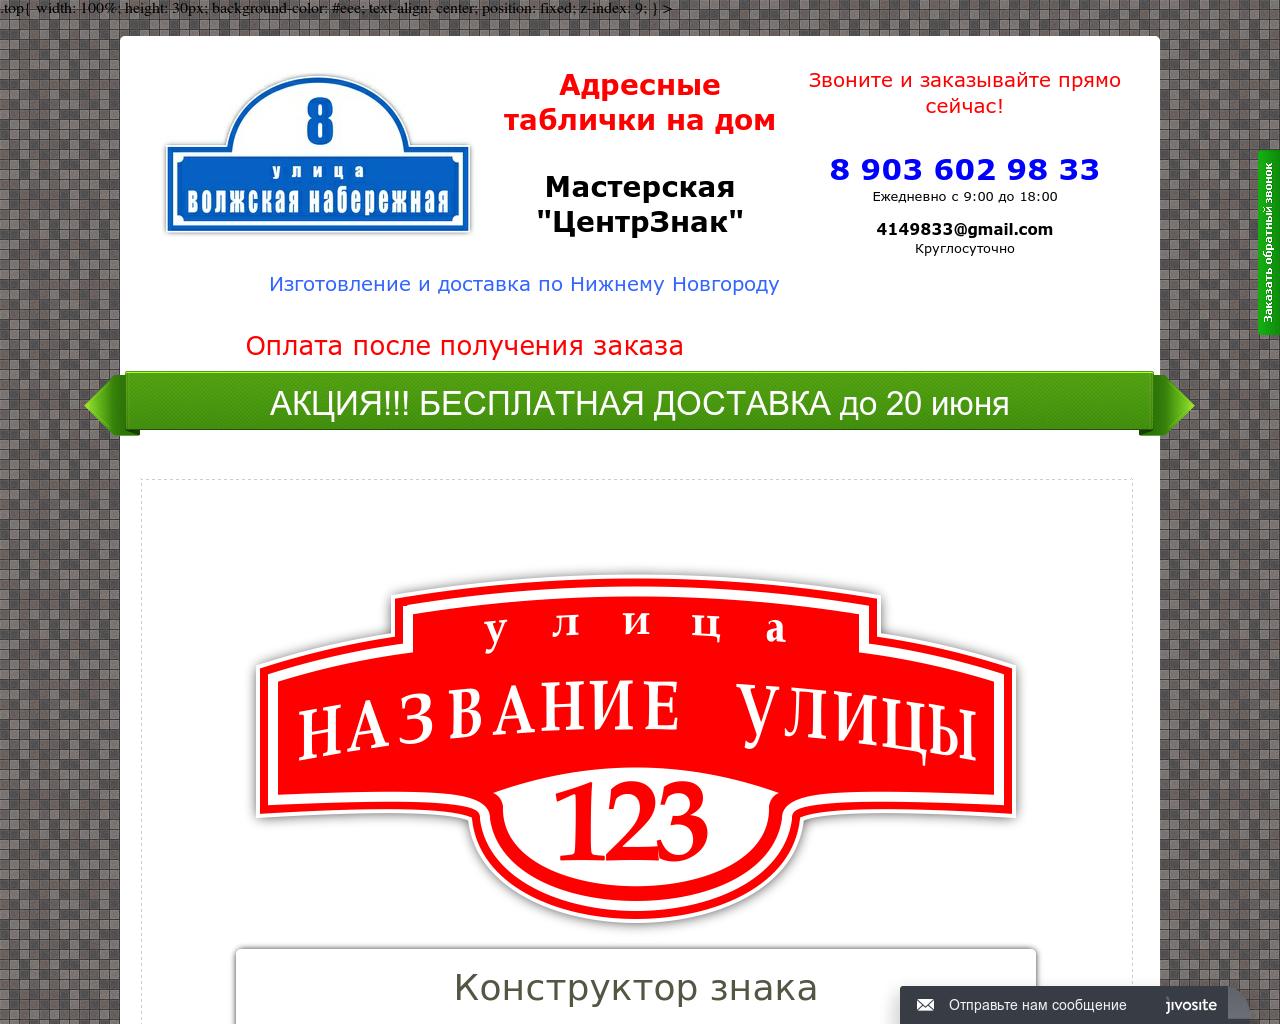 Изображение сайта wm152.ru в разрешении 1280x1024